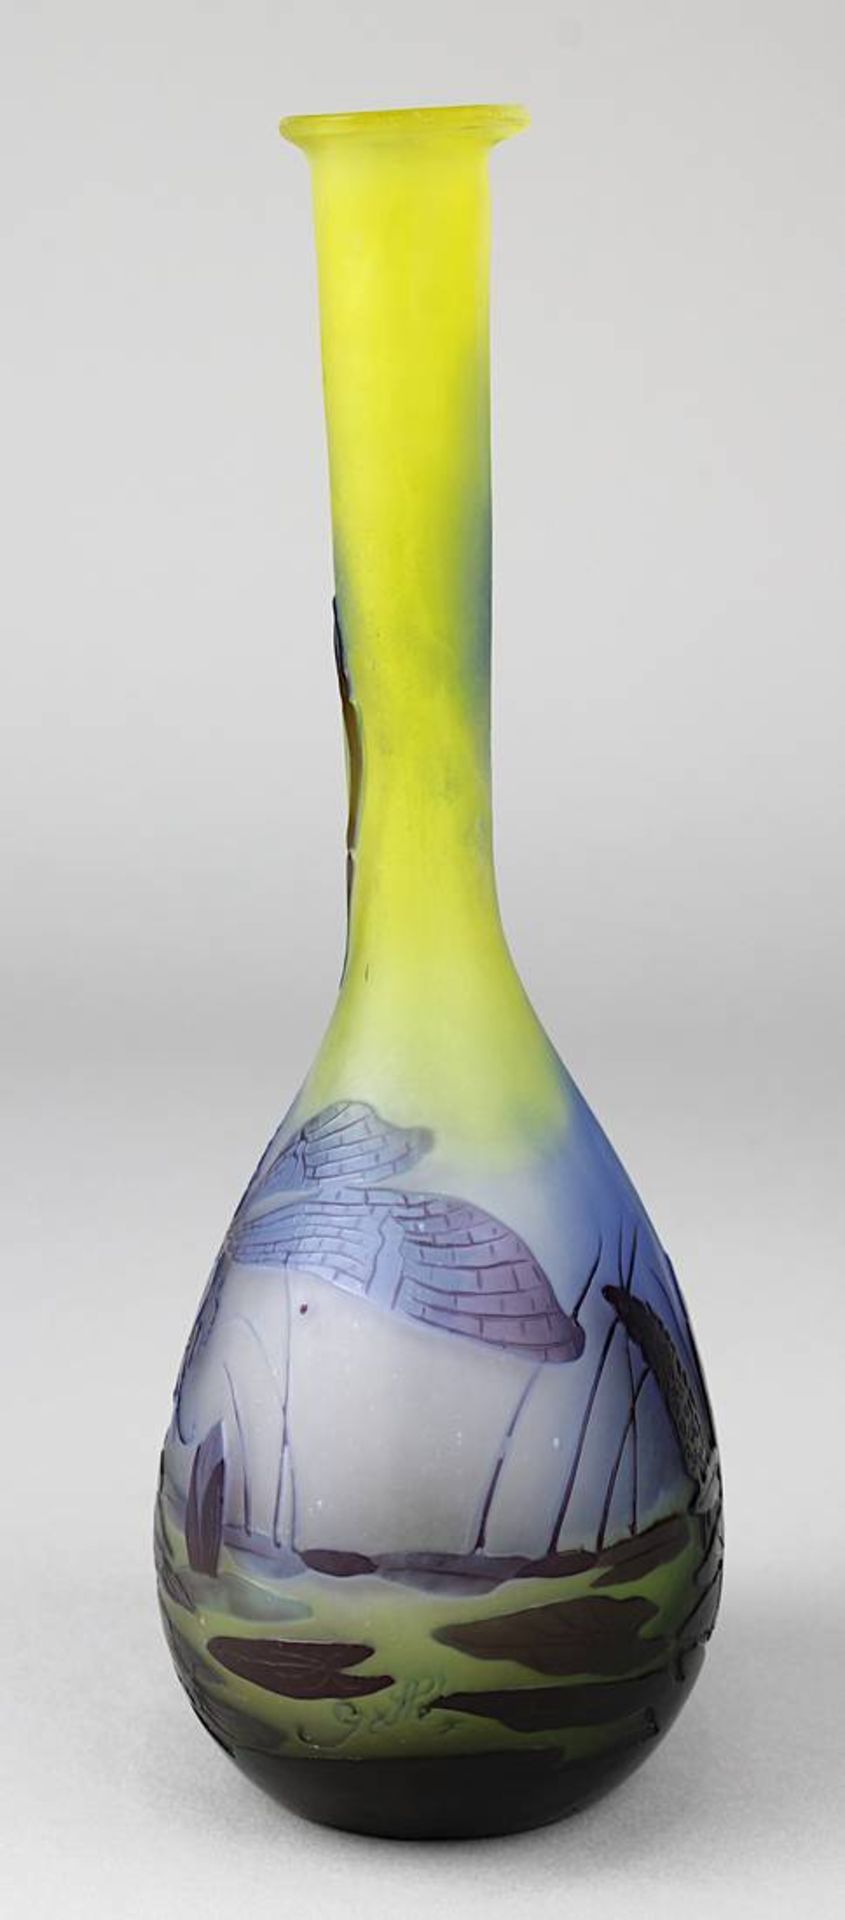 Gallé - Jugendstilvase Libelle, Nancy, 1904-06, Soliflor-Vase, leicht flachgedrückter Vasenbauch mit - Bild 2 aus 4